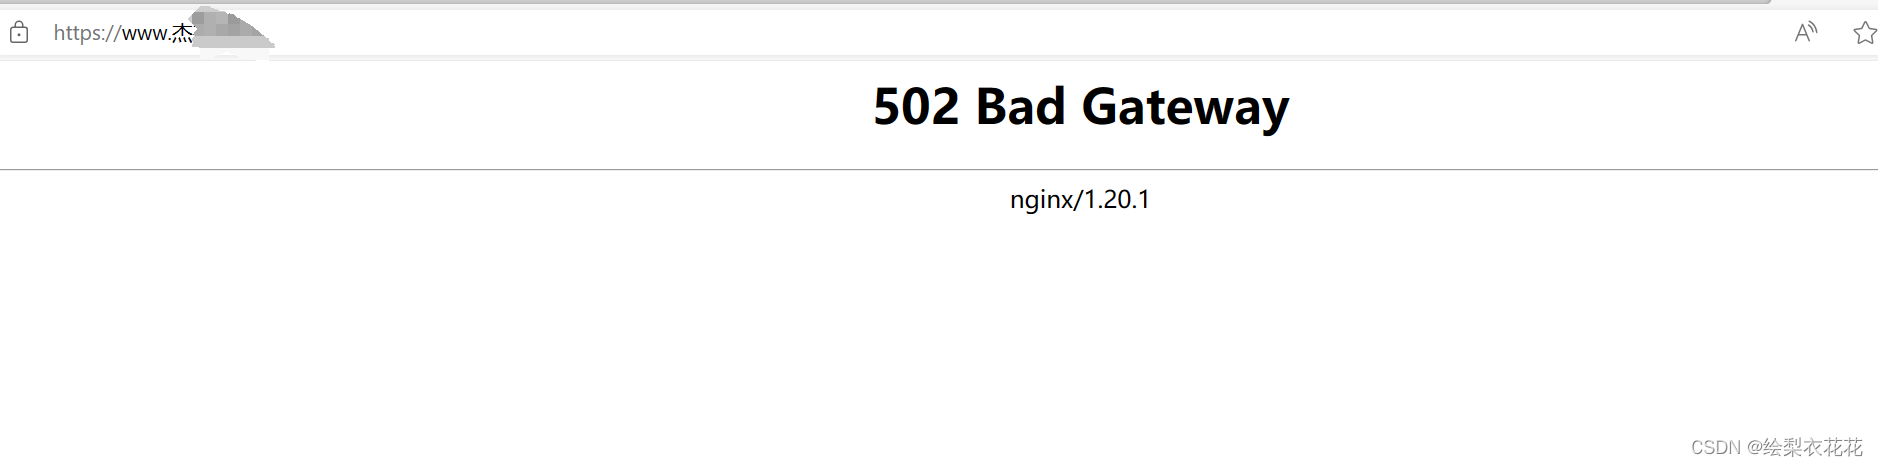 网页502 Bad Gateway nginx/1.20.1报错的原因与解决方法